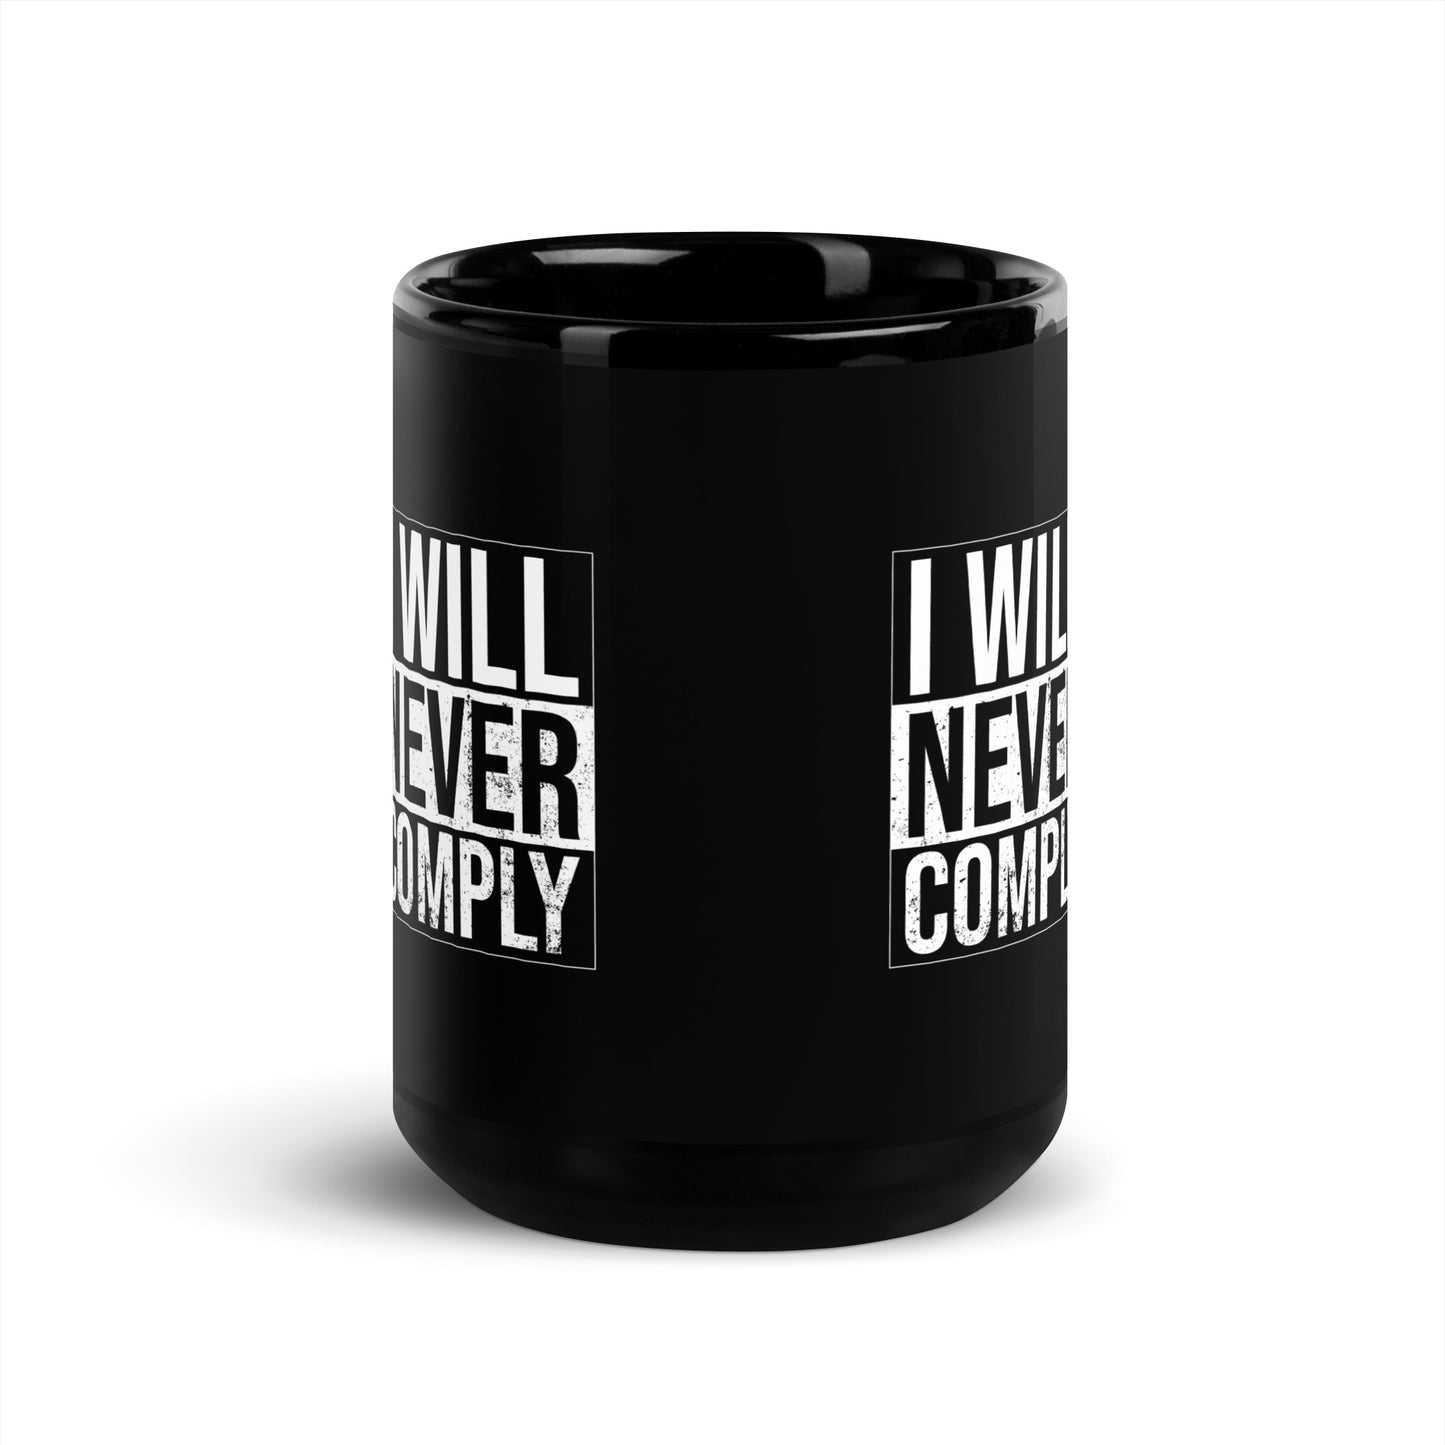 NEVER COMPLY Black Glossy Mug